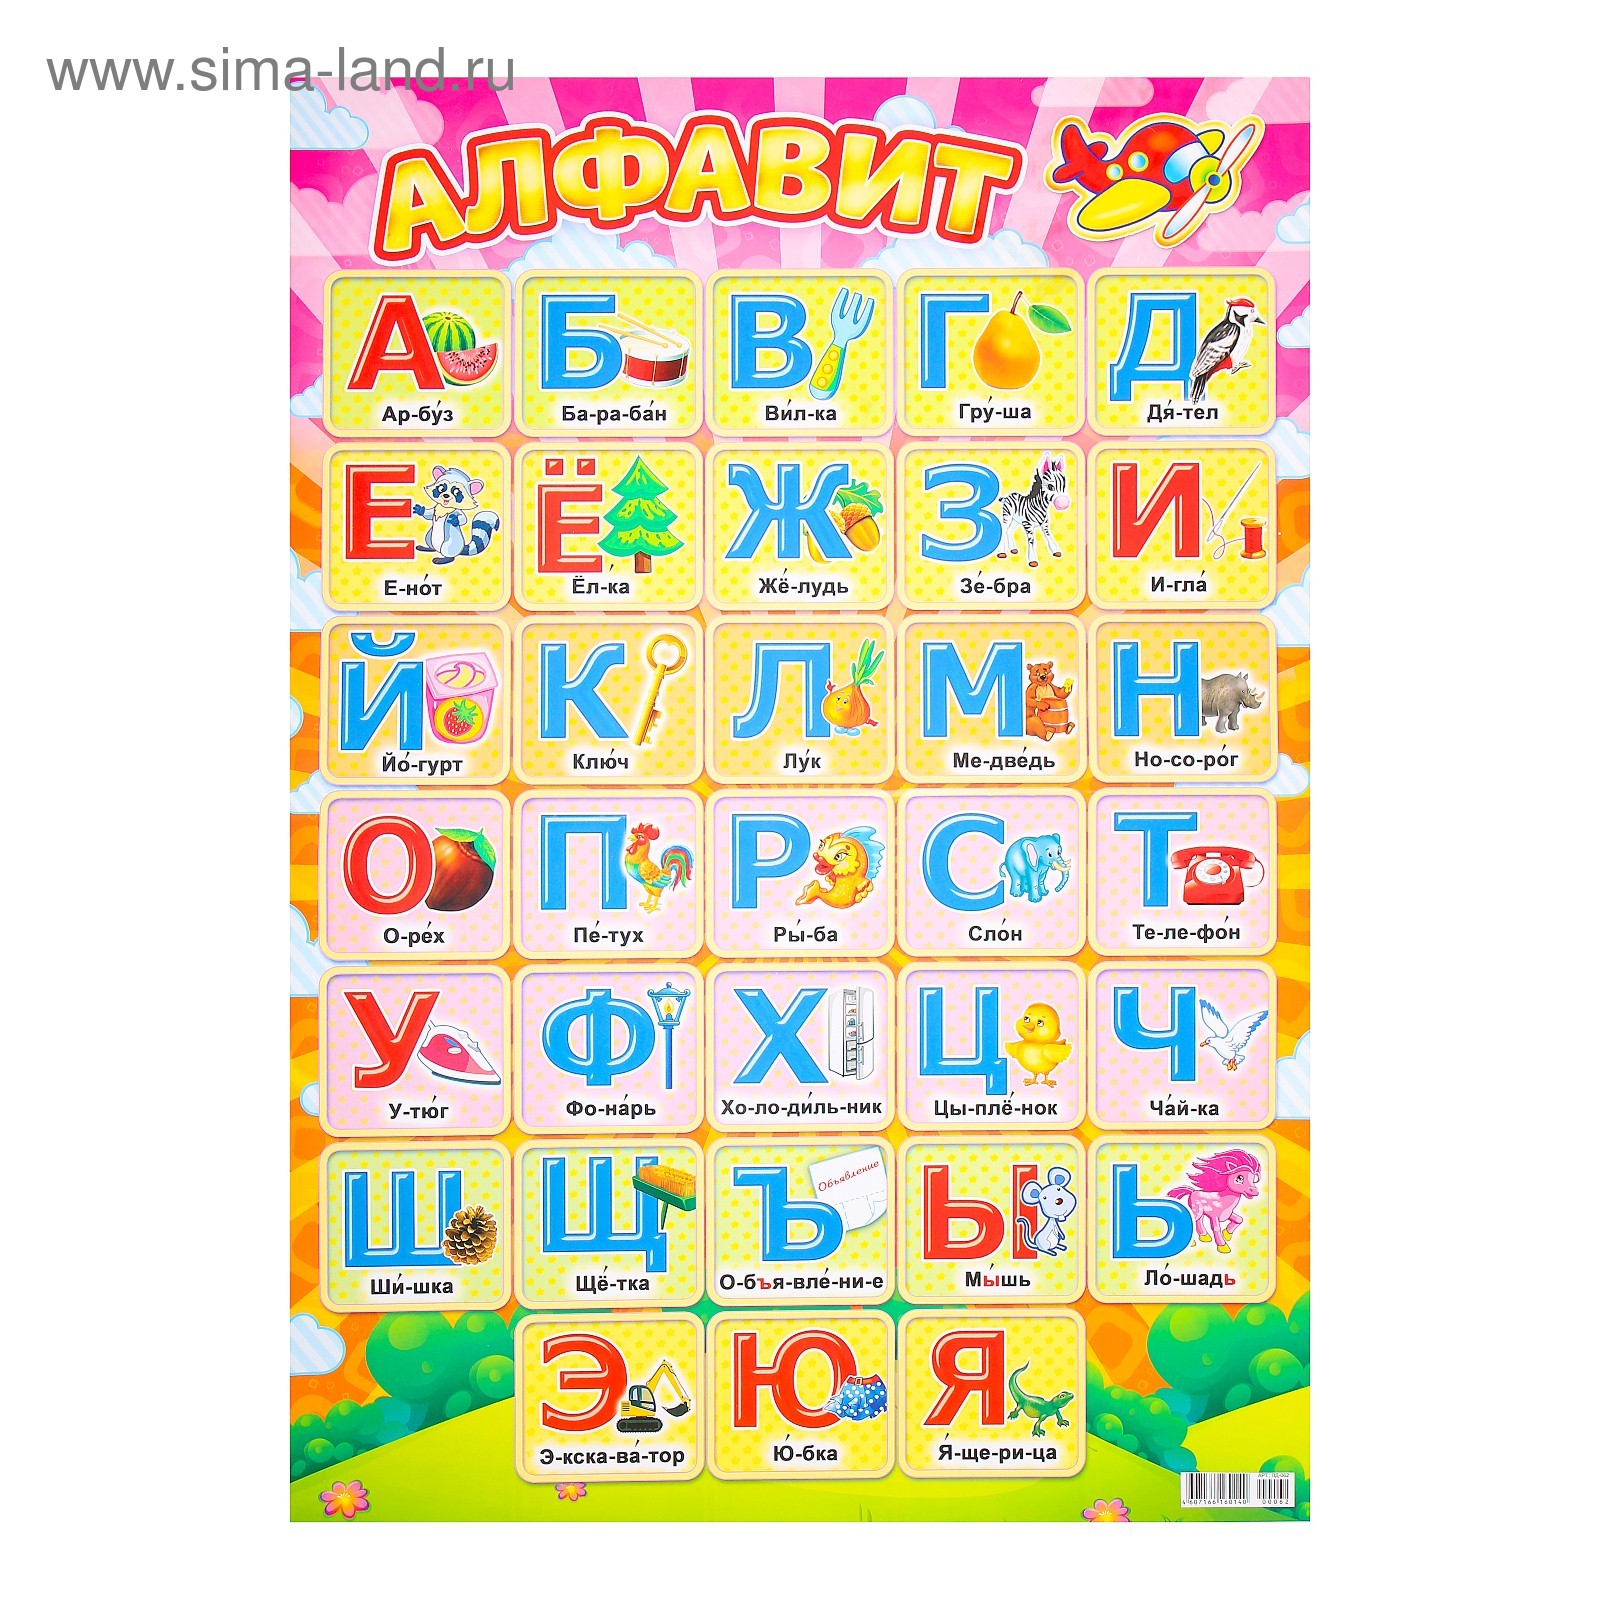 Показать буквы русского алфавита. Алфавит. Русский алфавит. Плакат алфавит для детей. Алфати.